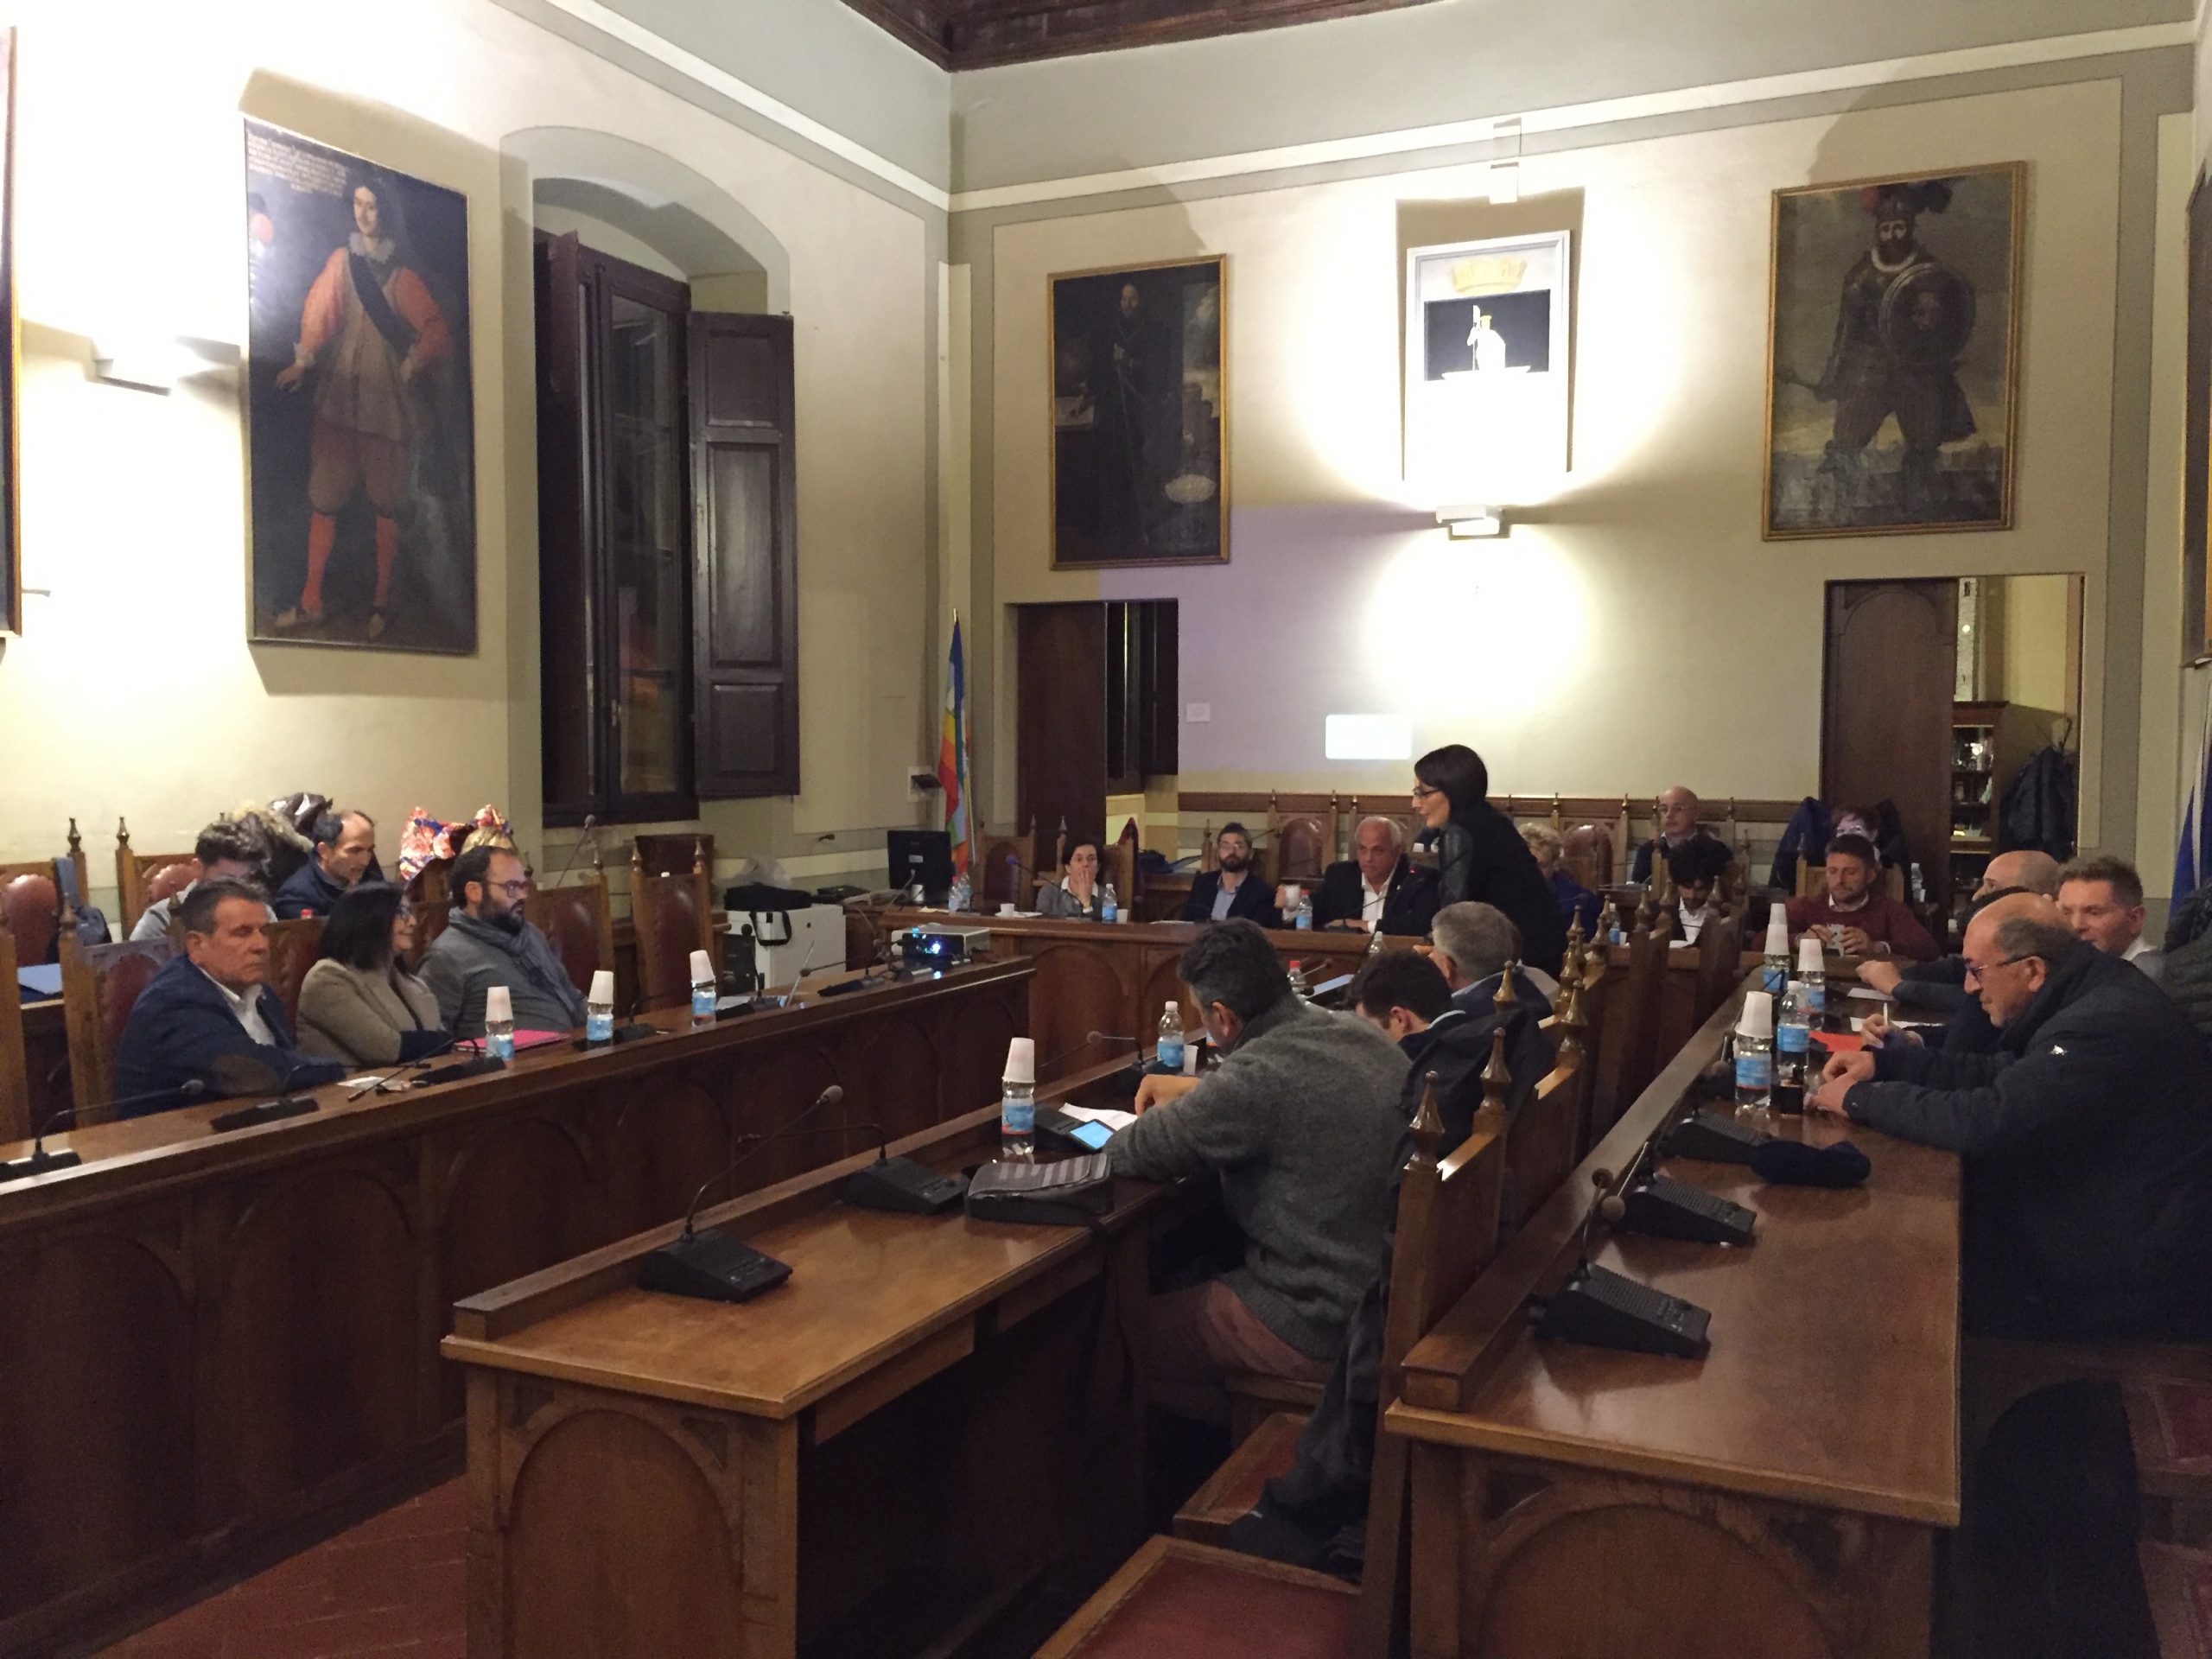 Consiglio comunale Sansepolcro: nuova seduta online